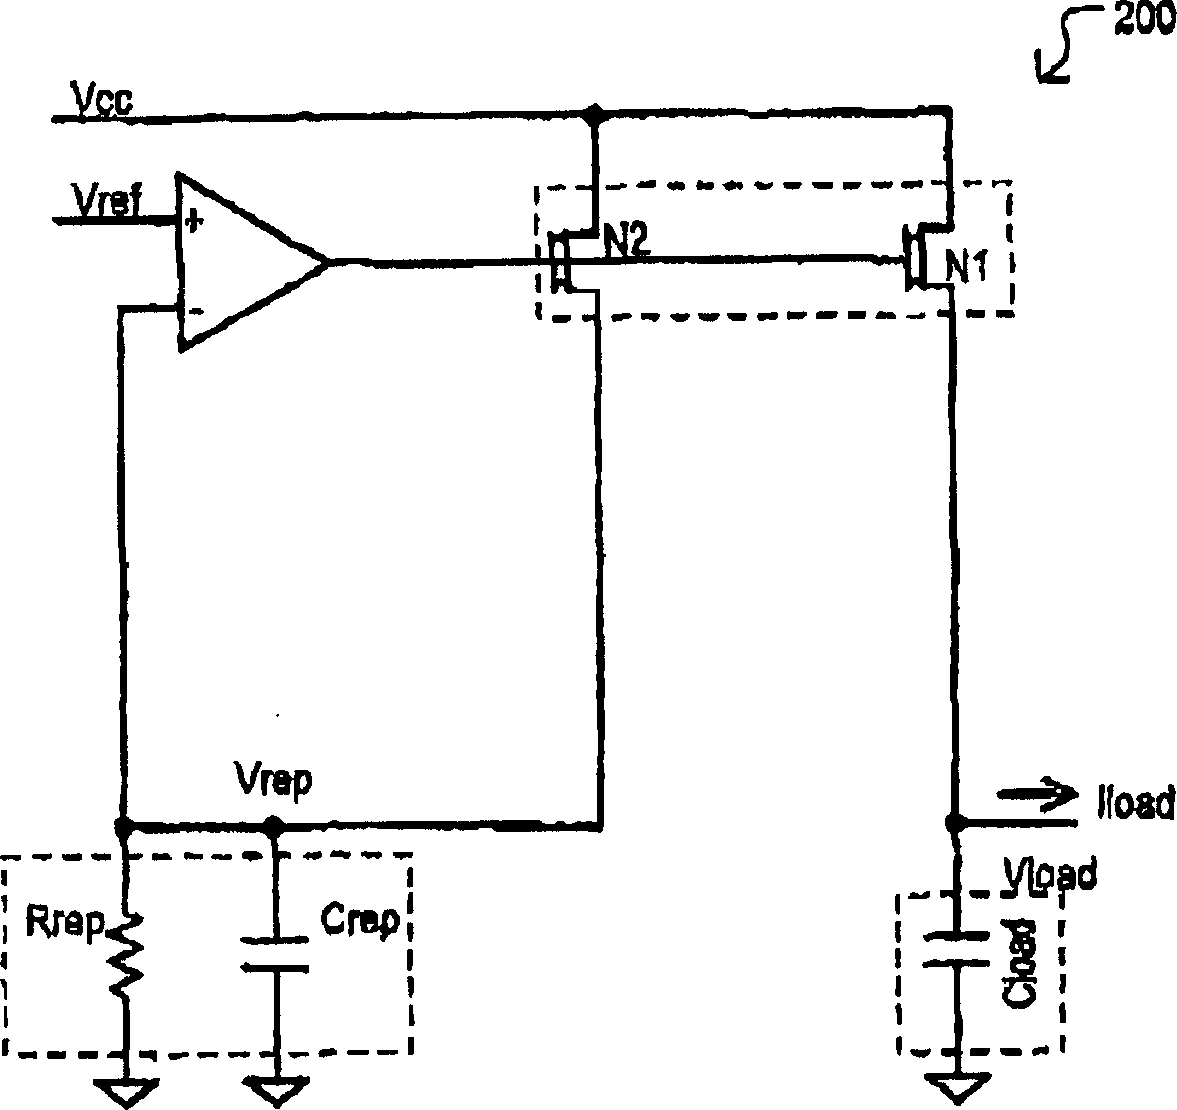 Replica biased voltage regulator